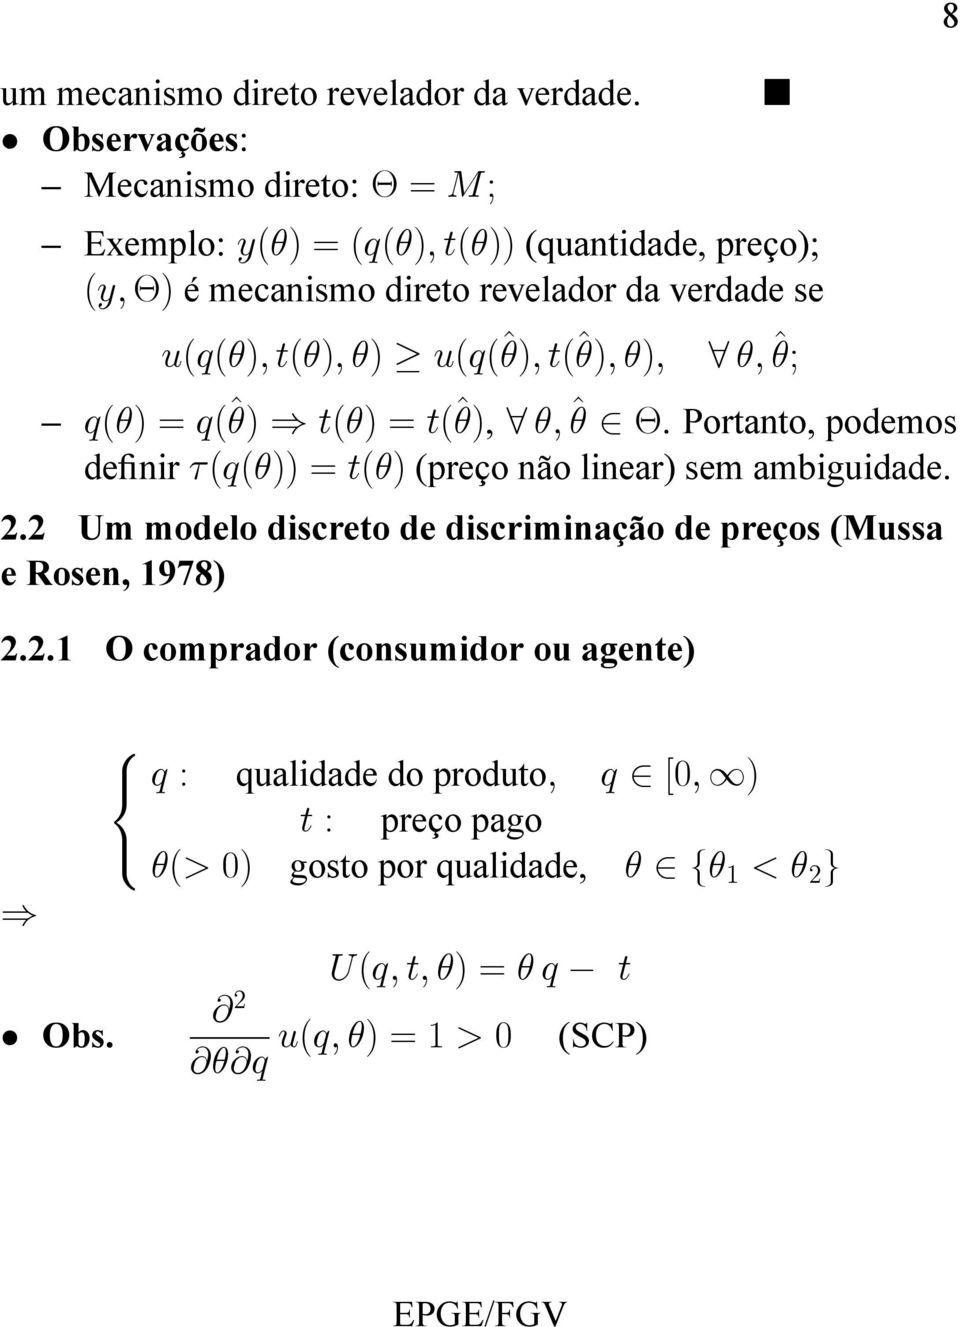 u(q(^); t(^); ); 8 ; ^; q() = q(^) ) t() = t(^), 8 ; ^ 2. Portanto, podemos denir (q()) = t() (preço não linear) sem ambiguidade. 2.2 Um modelo discreto de discriminação de preços (Mussa e Rosen, 1978) 2.